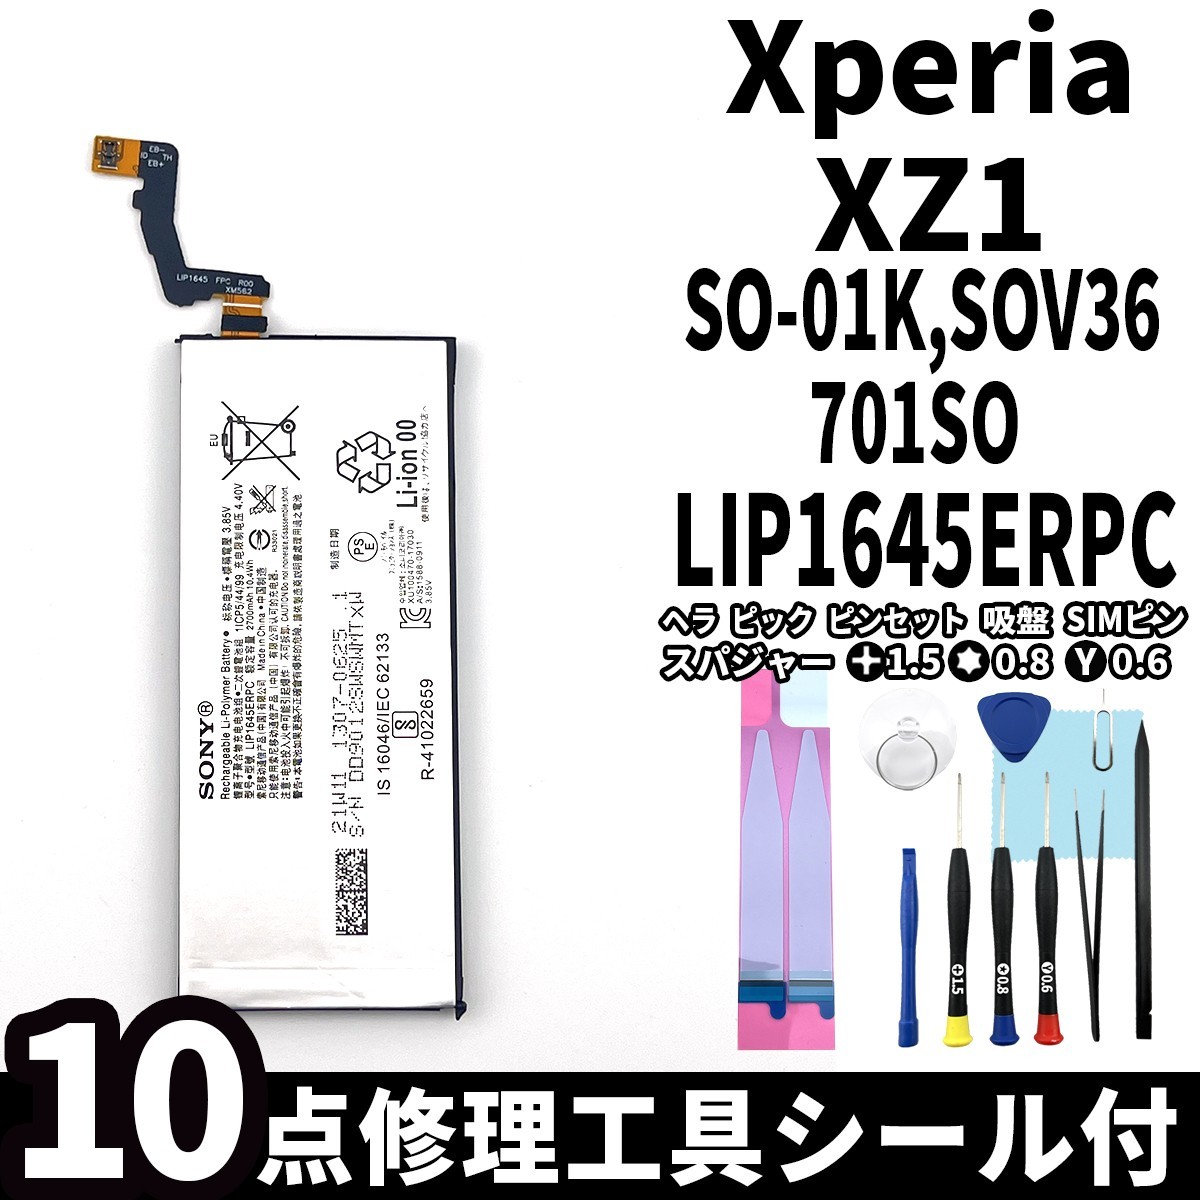 国内即日発送!純正同等新品!Xperia XZ1 バッテリー LIP1645ERPC SO-01K SOV36 701SO 電池パック交換 内蔵battery 両面テープ 修理工具付_画像1